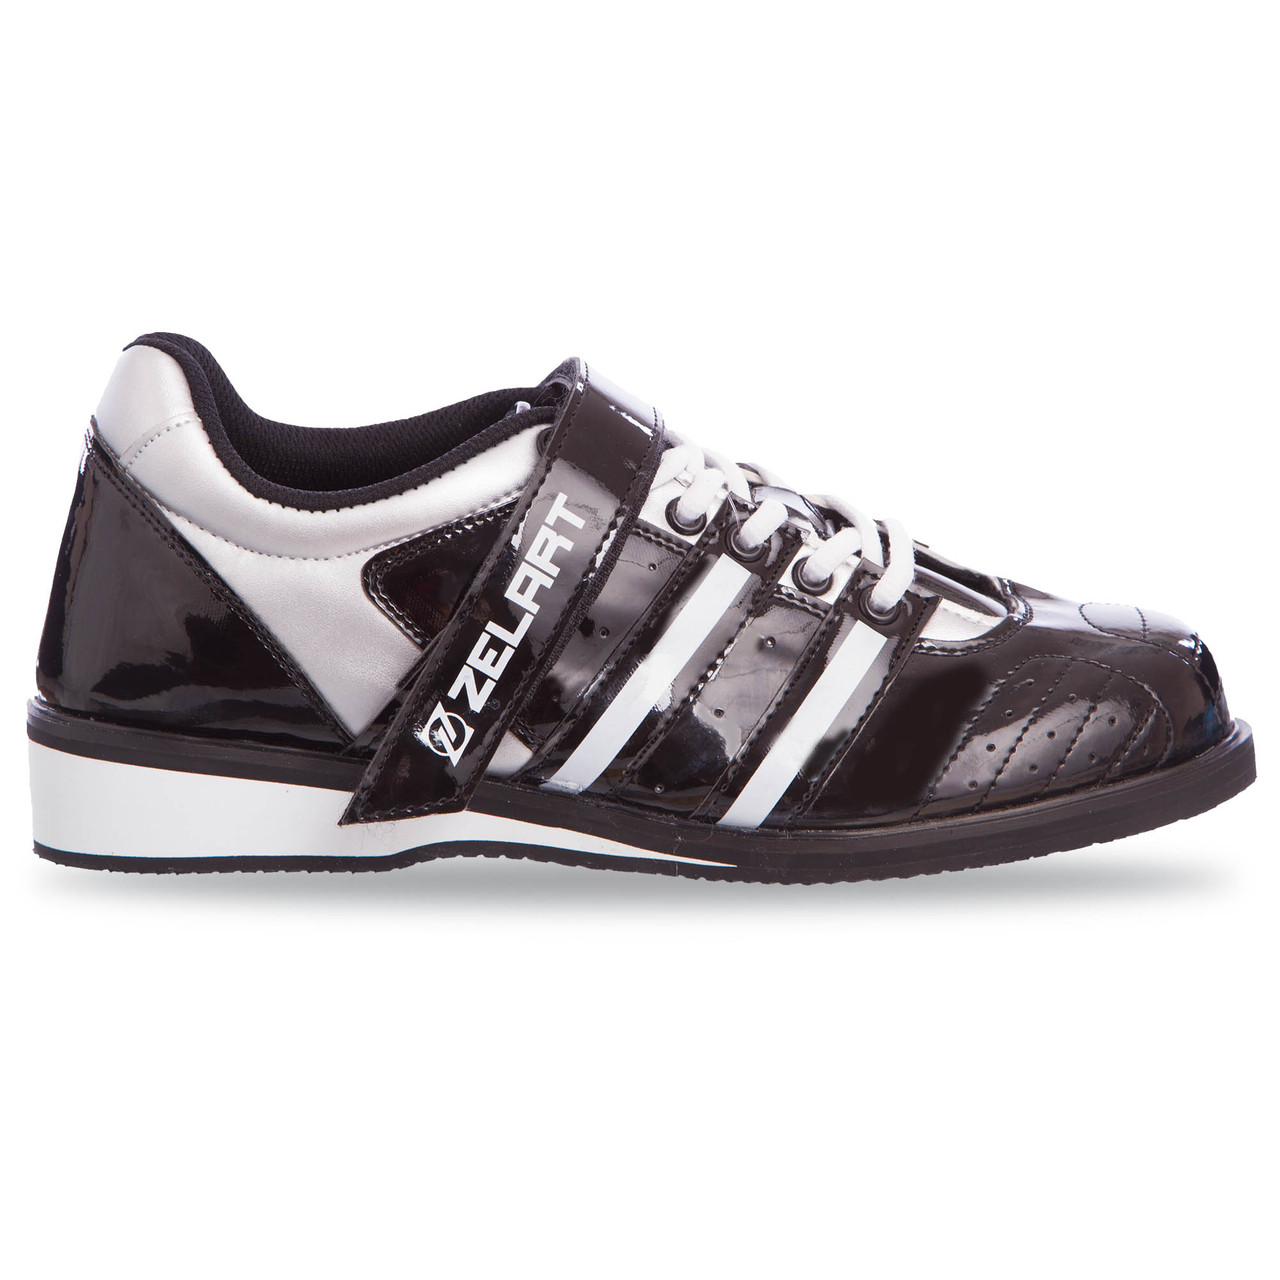 Штангетки взуття для важкої атлетики PU чорно-білі OB-1265 39 (25,5 см)